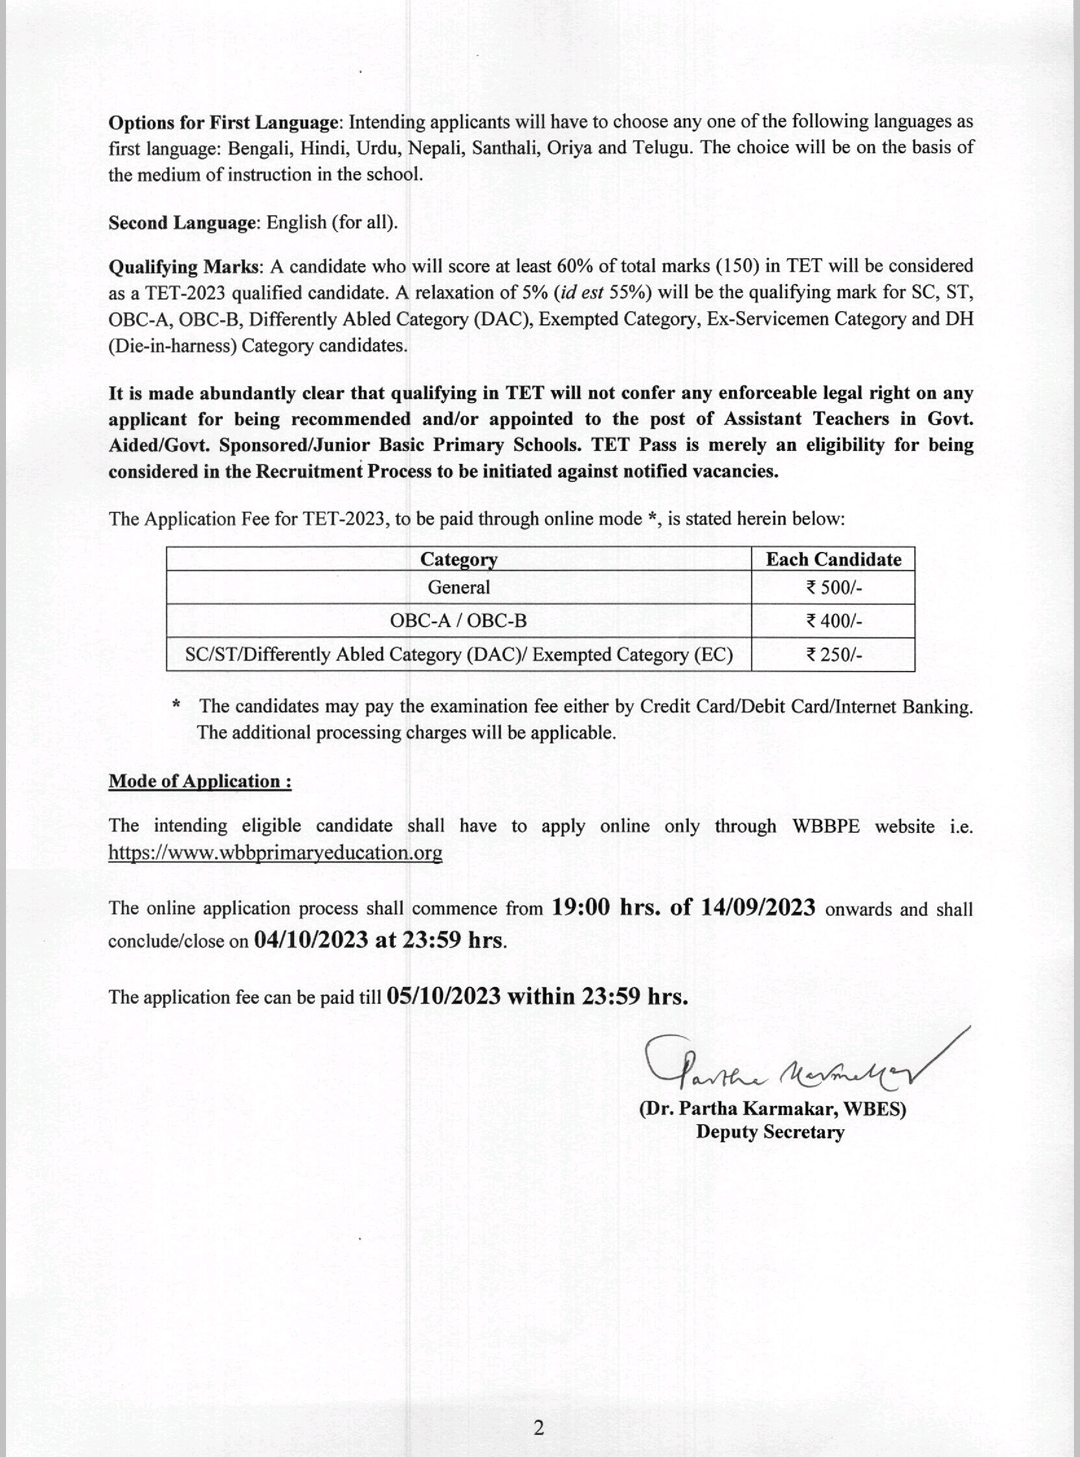 প্রাইমারি টেট নোটিফিকেশন ২০২৩ | West Bengal Primary TET 2023 Notification